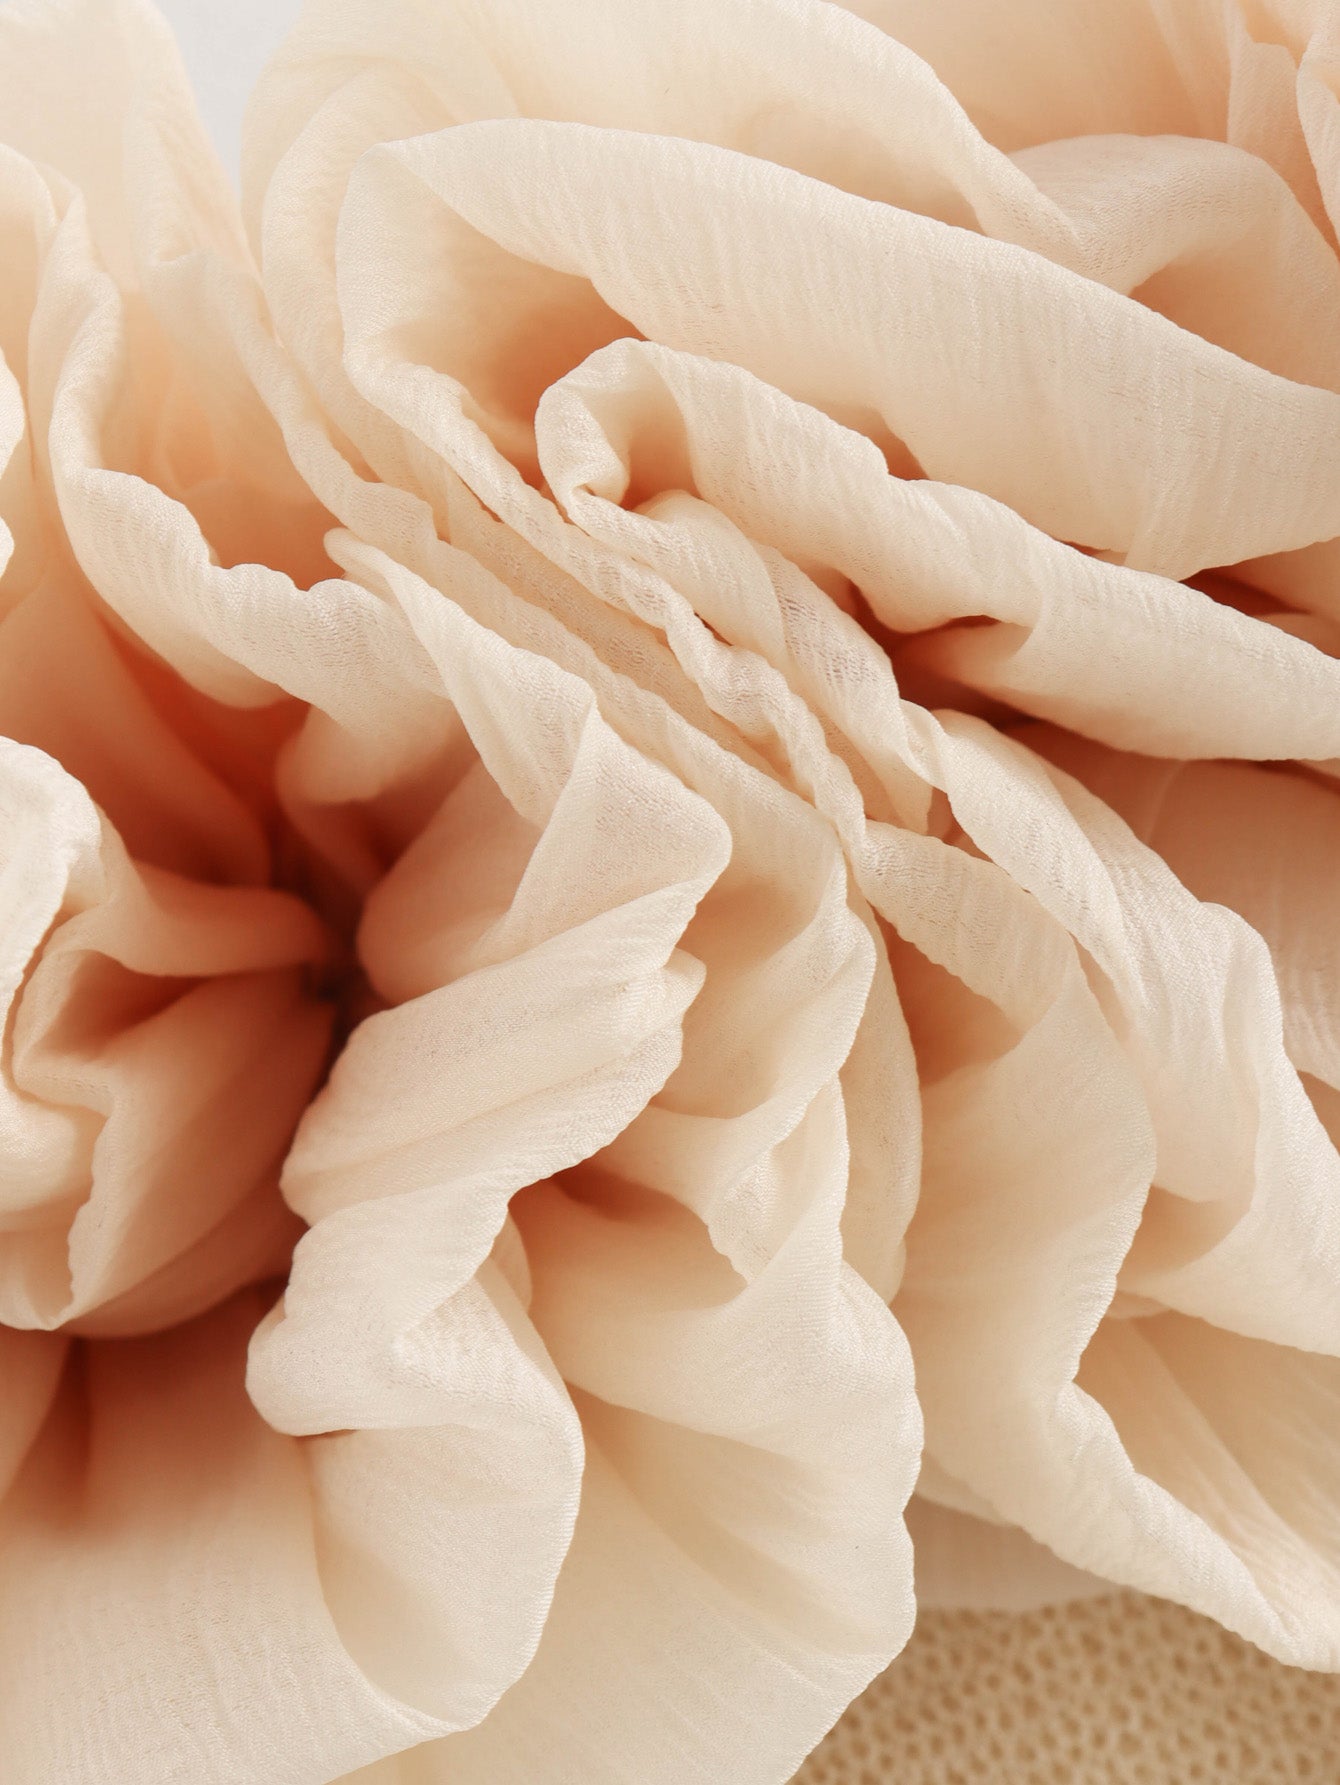 Ropa de mujer de primavera Vestido largo de tubo largo tejido con estampado floral delgado